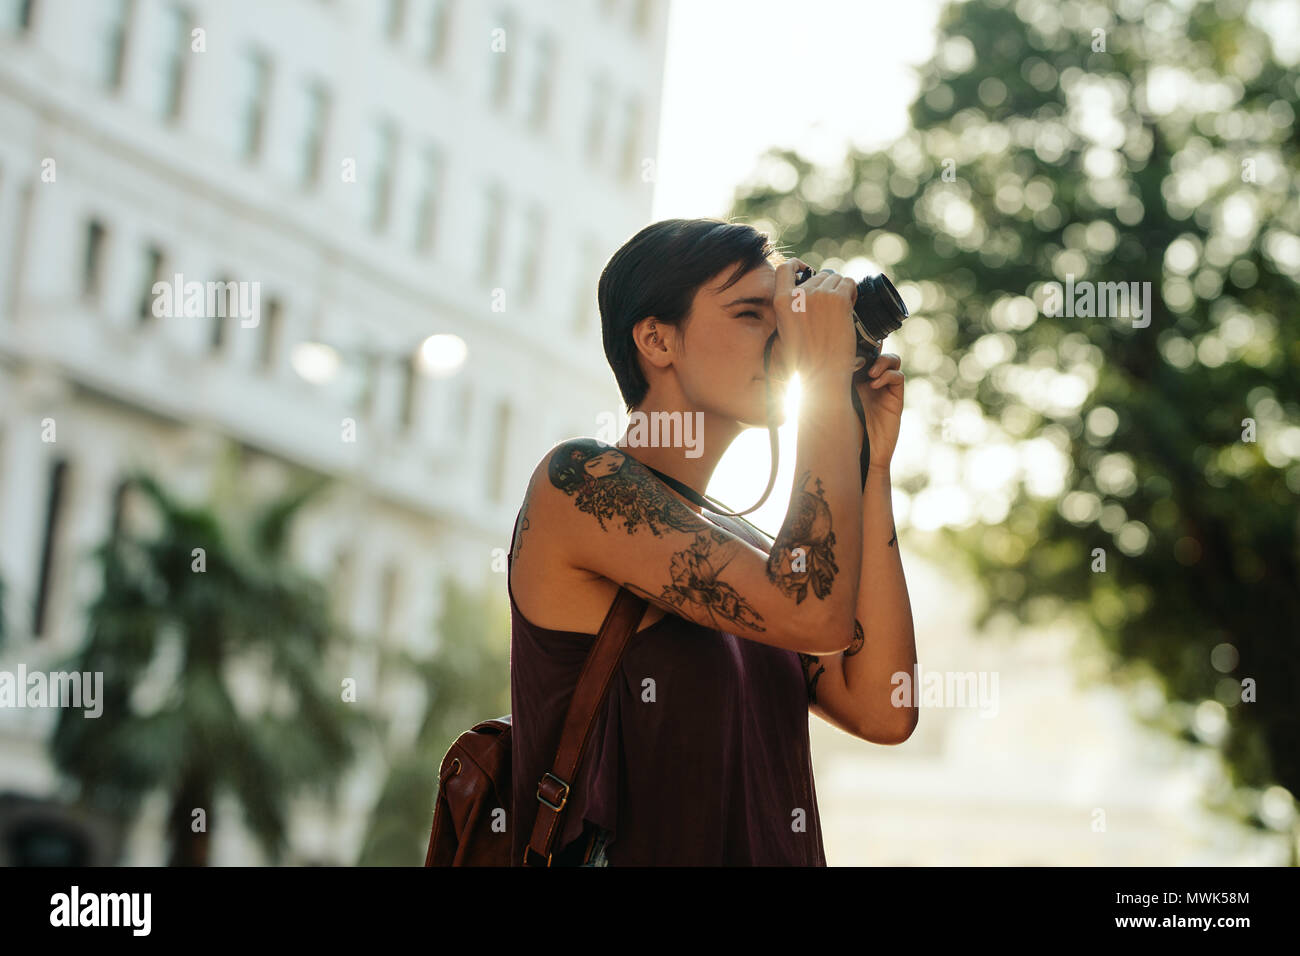 Donna traveler prendendo foto utilizzando la sua fotocamera con Sun in background. Turistico con tatuaggio sulla sua mano andando in giro per la città prendendo fotografie. Foto Stock